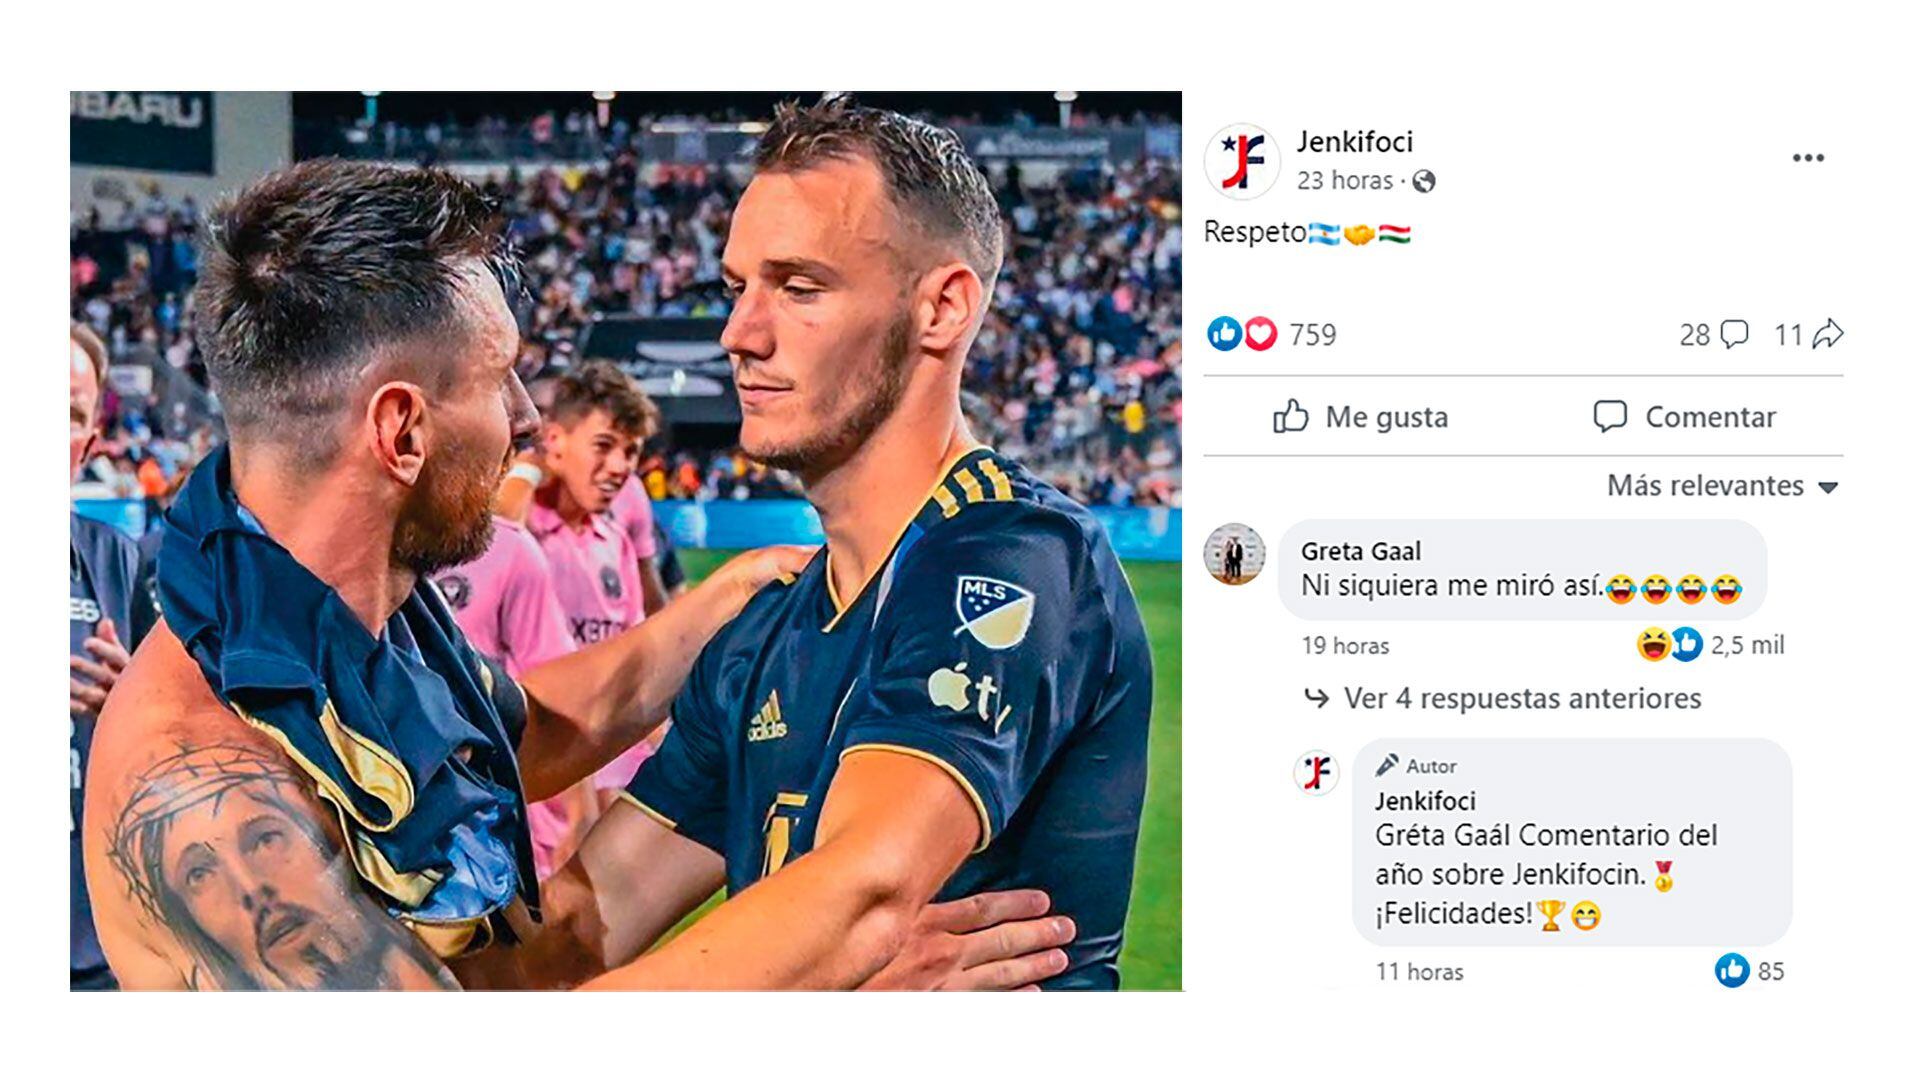 El comentario de Gréta Gáal sobre la mirada de su esposo a Messi (Foto: Facebook)